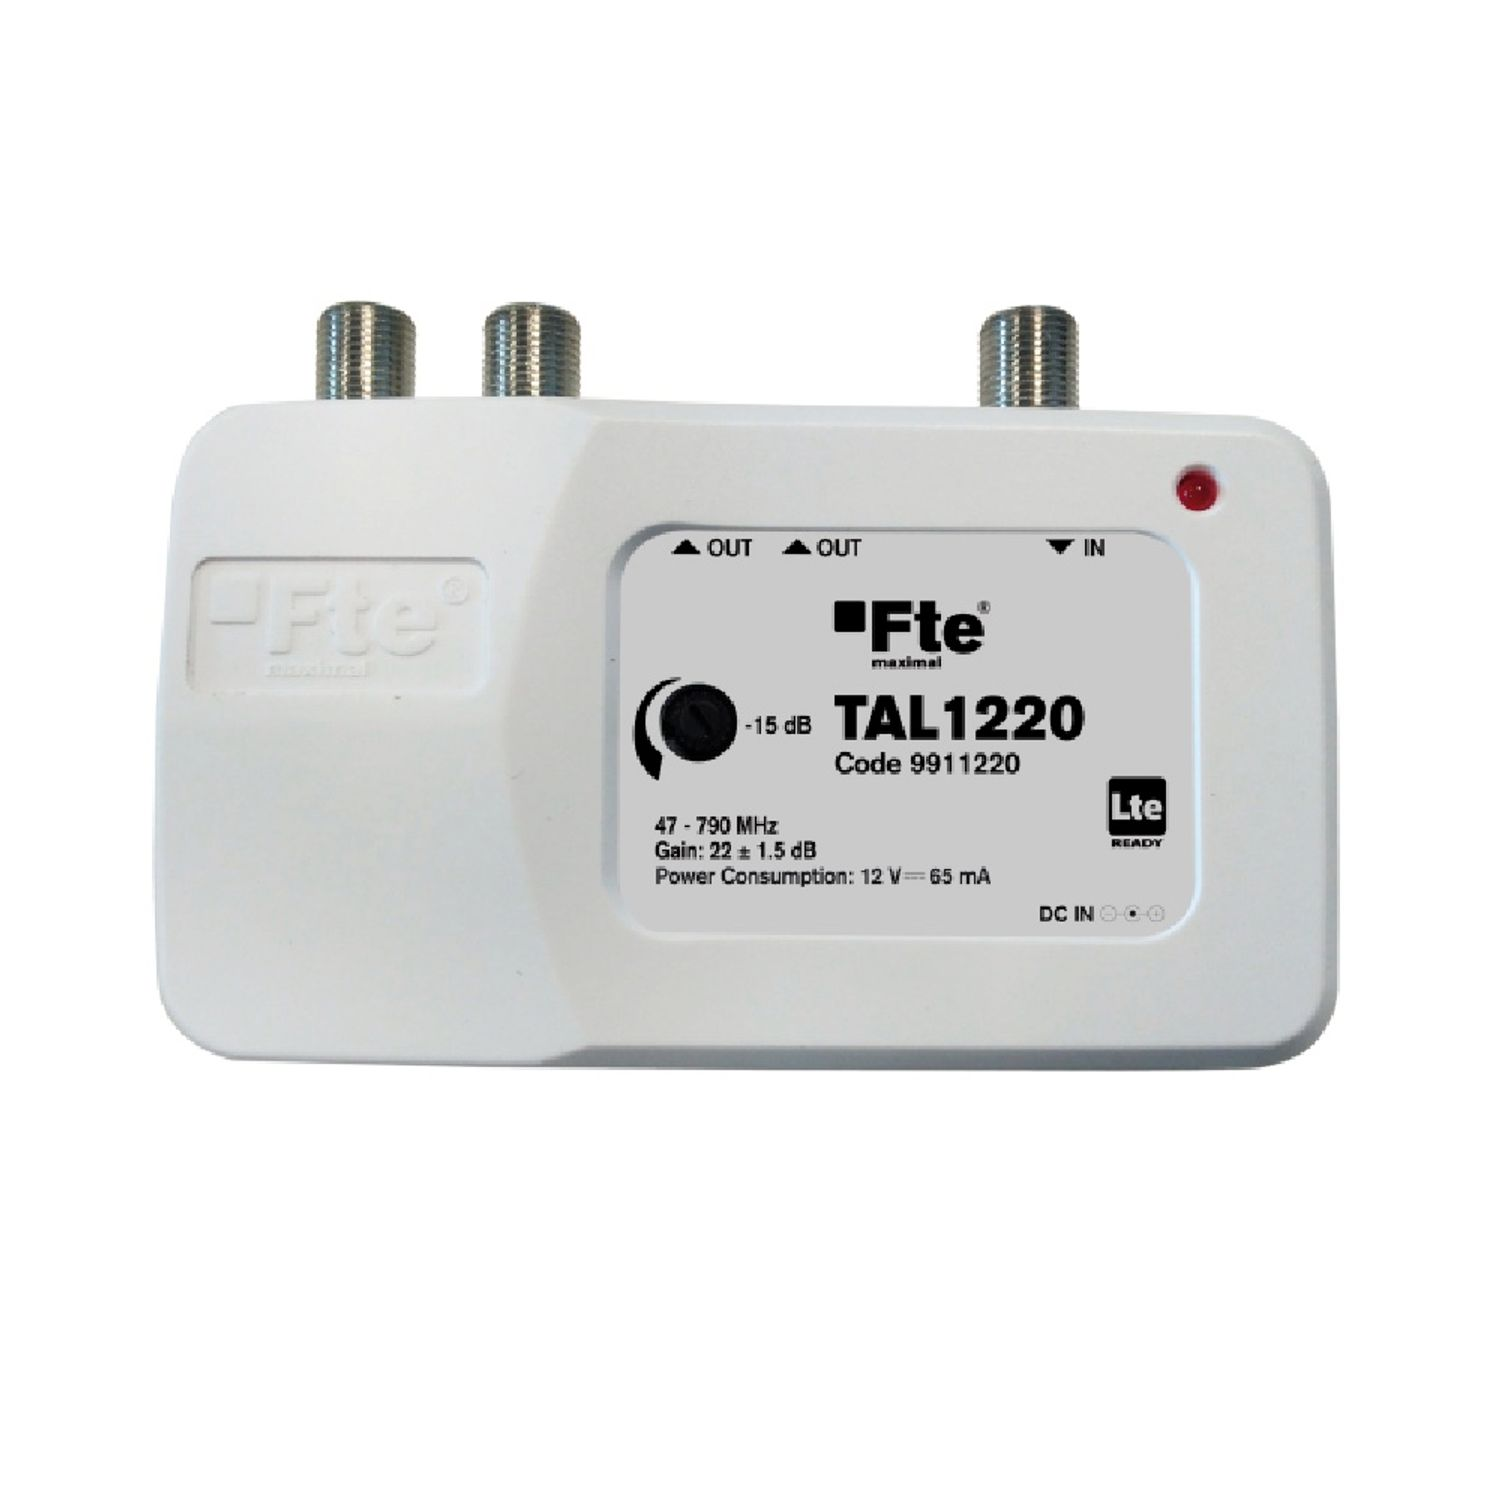 FTE MAXIMAL 1220 DVB-T2) TAL (DVB-C, Signalverstärker